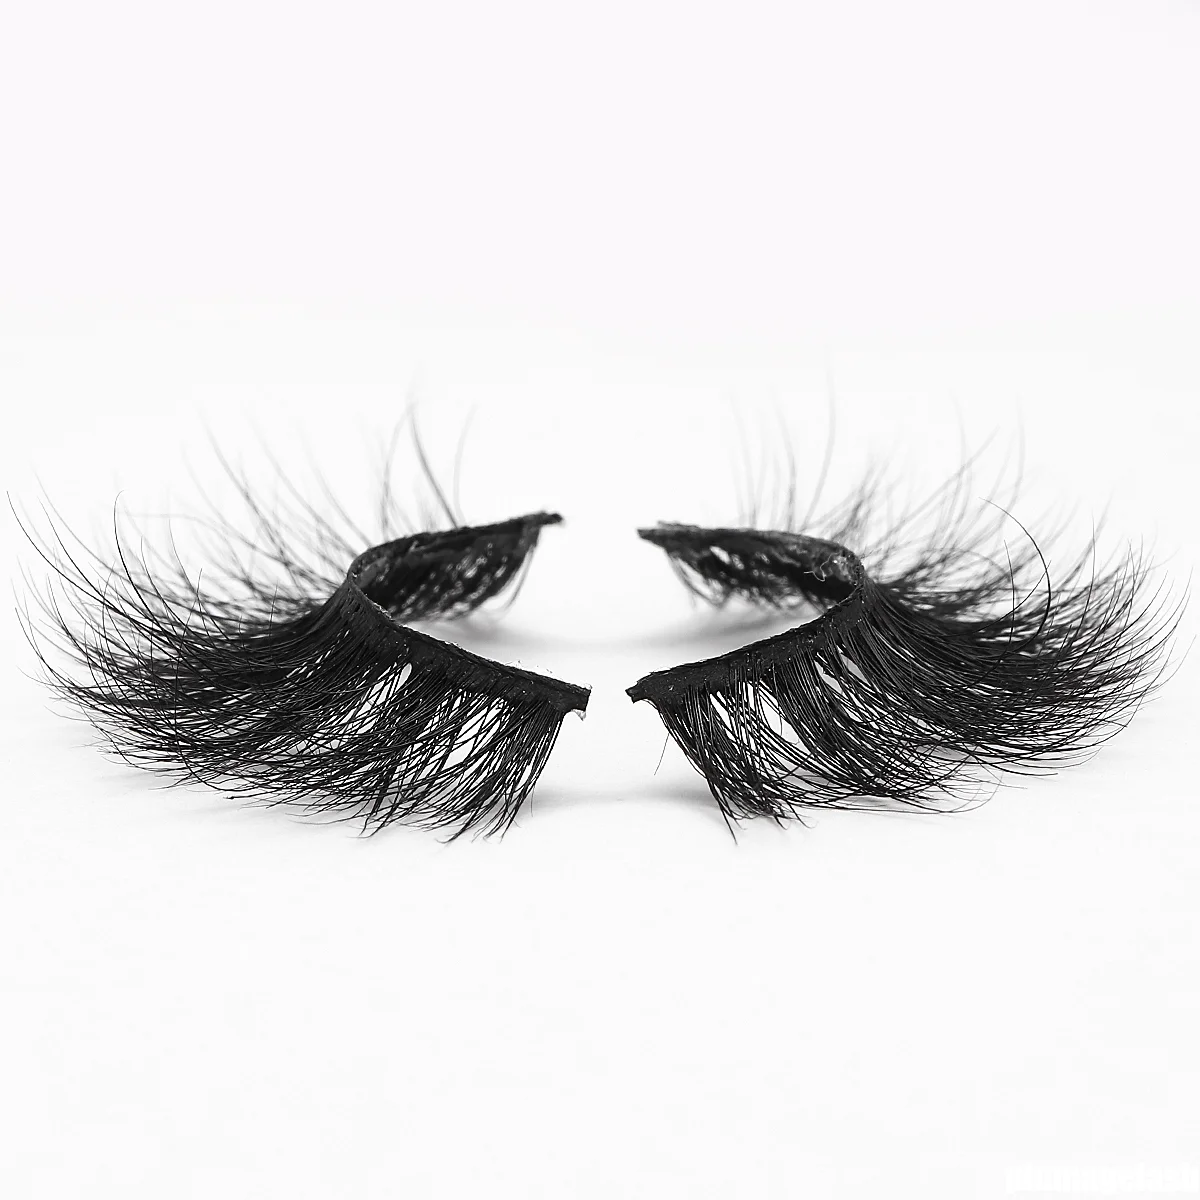 New customized eyelashes packaging luxury 3D mink eyelashes vendor